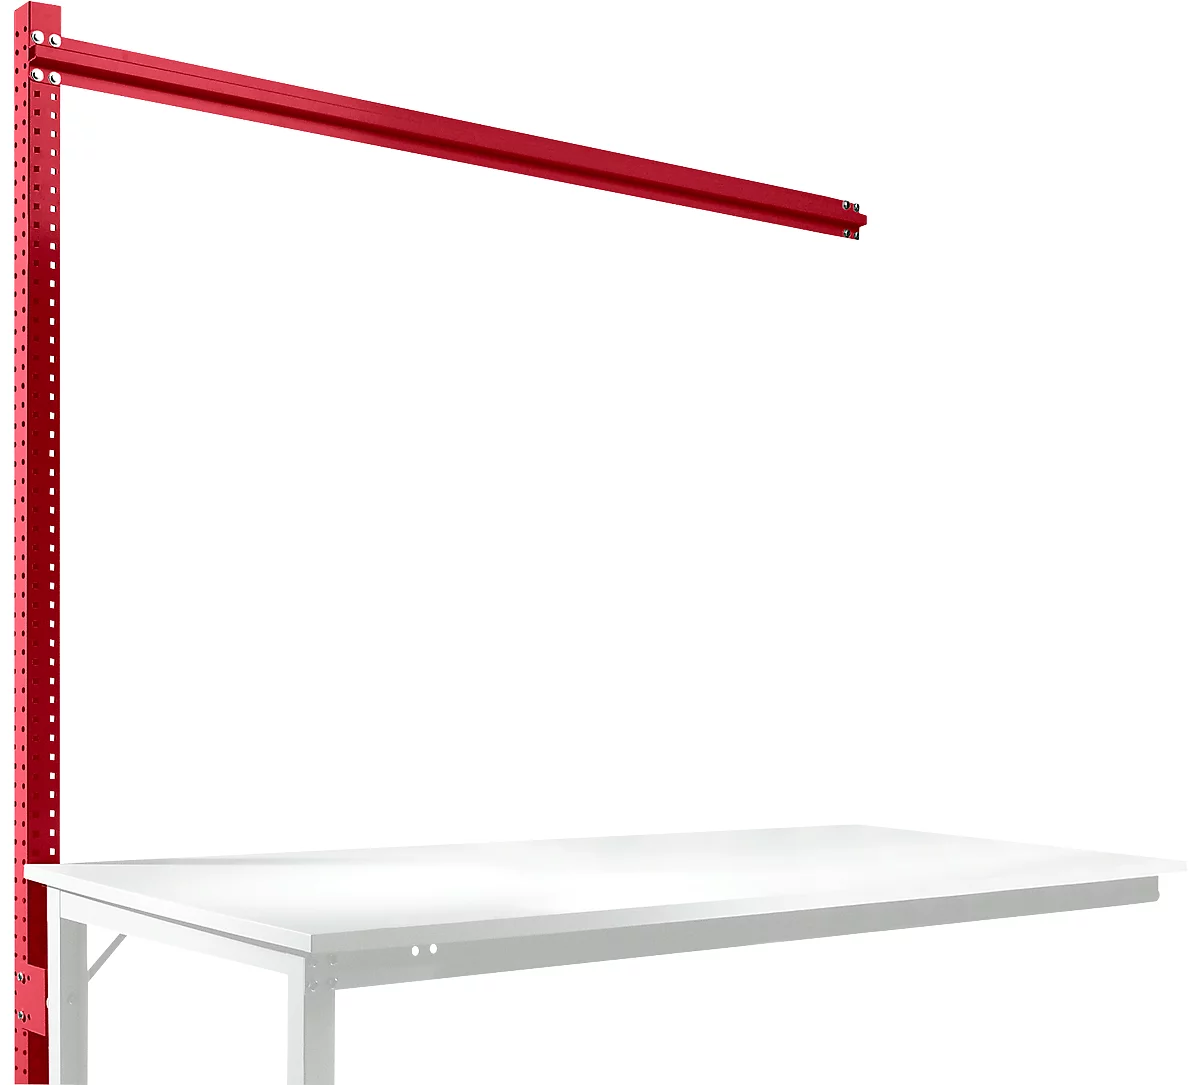 Estructura pórtica adicional para mesa de extensión STANDARD sistema mesa de trabajo/banco de trabajo UNIVERSAL/PROFI, 1750 mm, rojo rubí